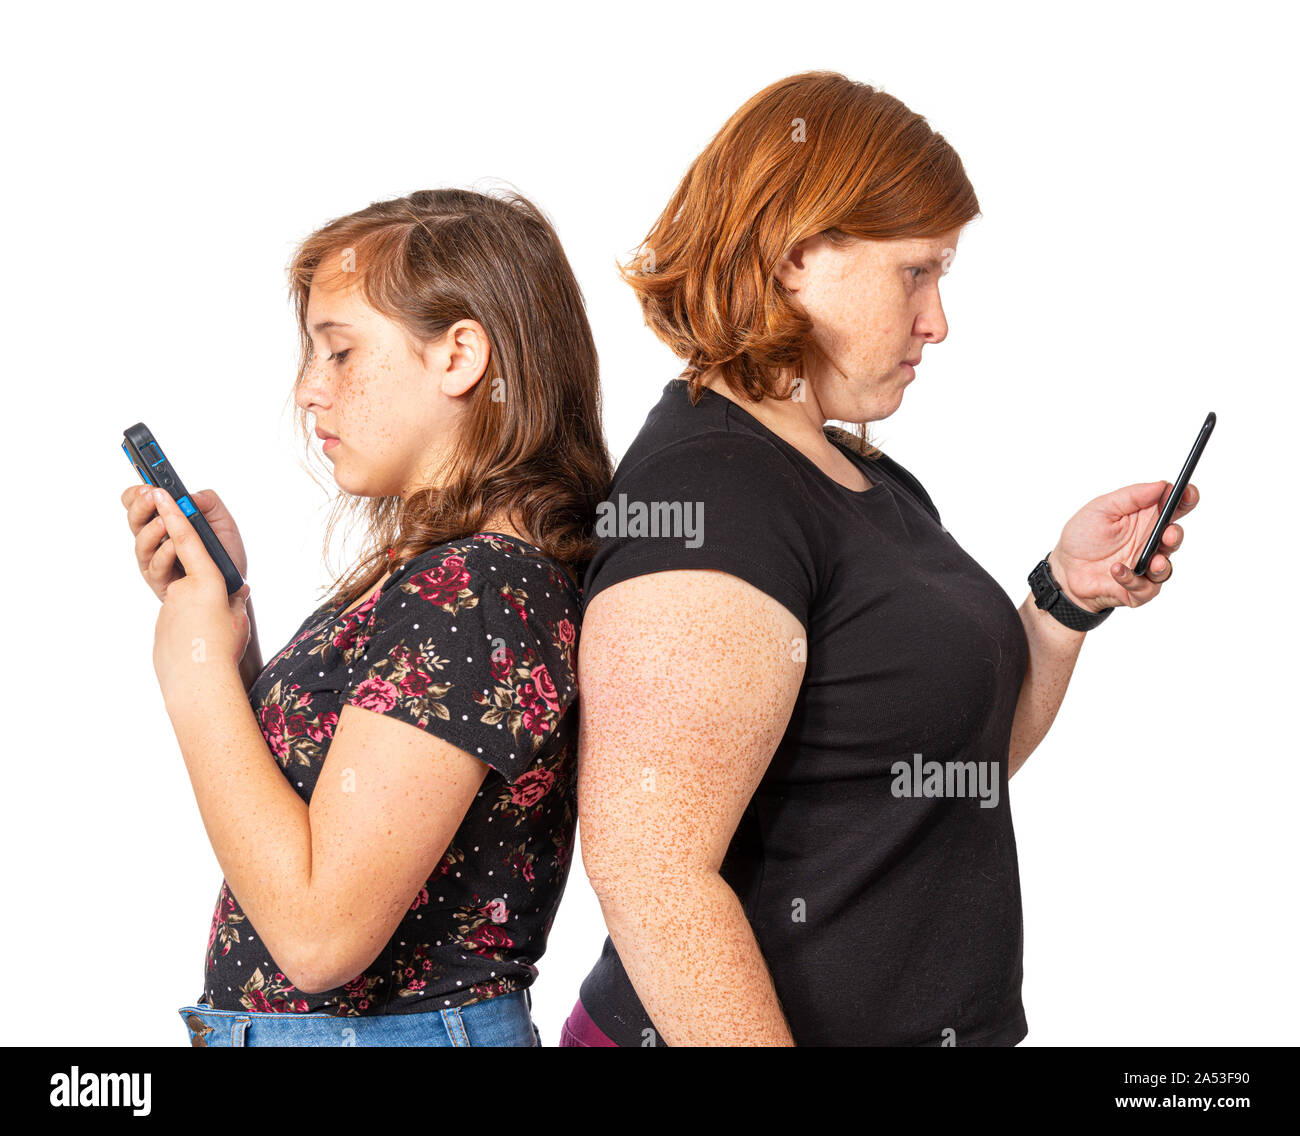 Horizontale studio Schoß einer Mutter und Tochter zurück lehnen jede mit ihrem eigenen Handy zu sichern. Weißer Hintergrund. Stockfoto